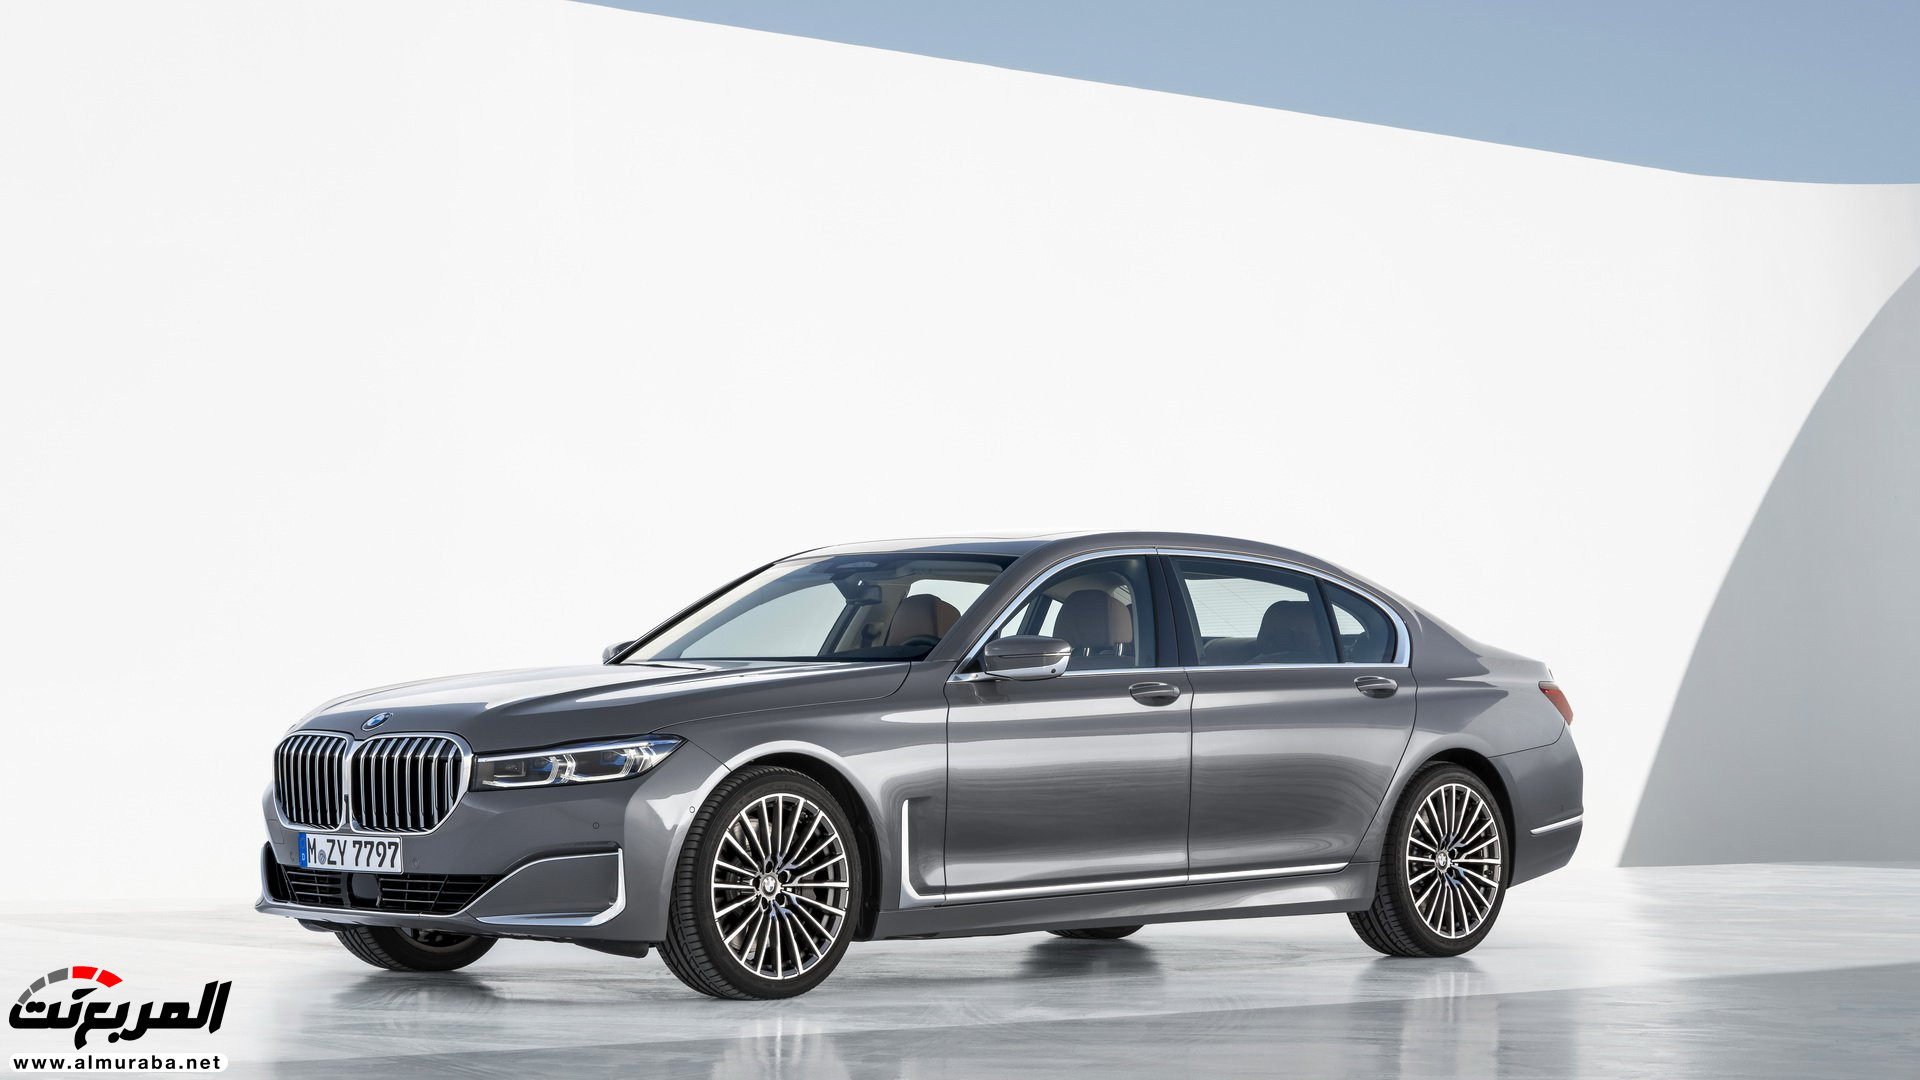 بي ام دبليو الفئة السابعة 2020 المحدثة تكشف نفسها رسمياً "صور ومواصفات" BMW 7 Series 257